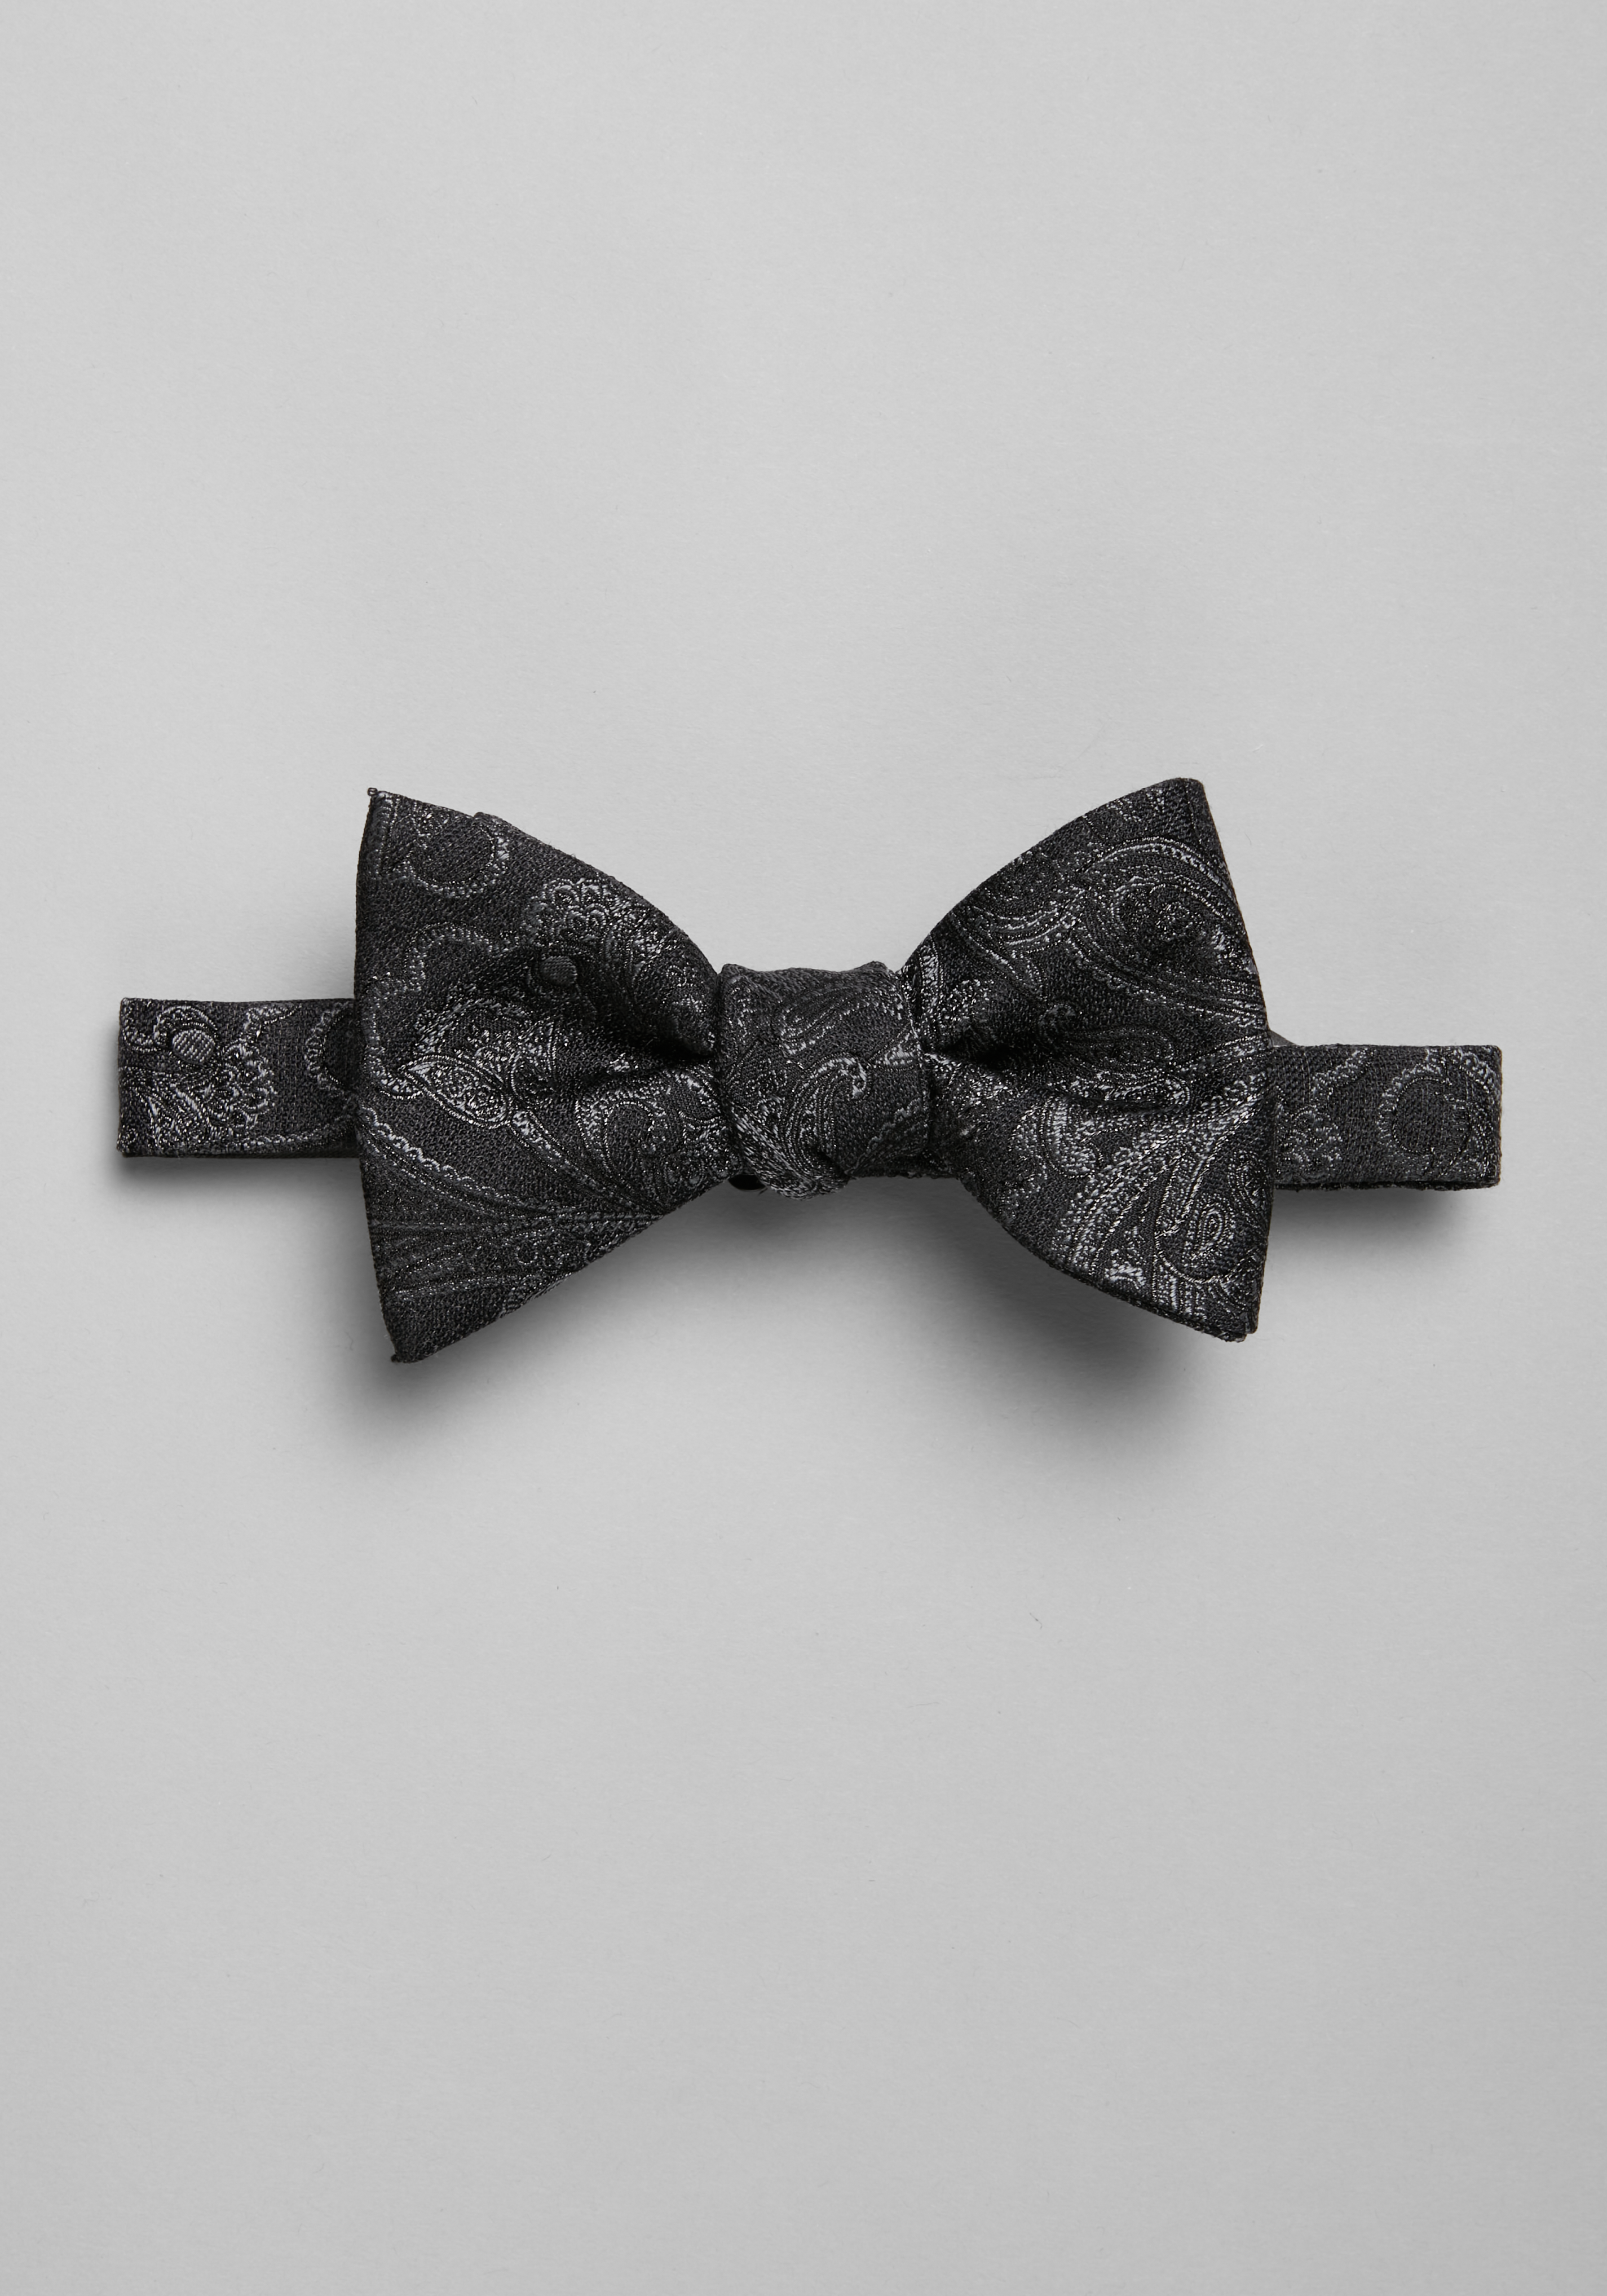 vermogen Middelen dood gaan Ties, Neckties & Bow Ties | Men's Neckwear | JoS. A. Bank Clothiers